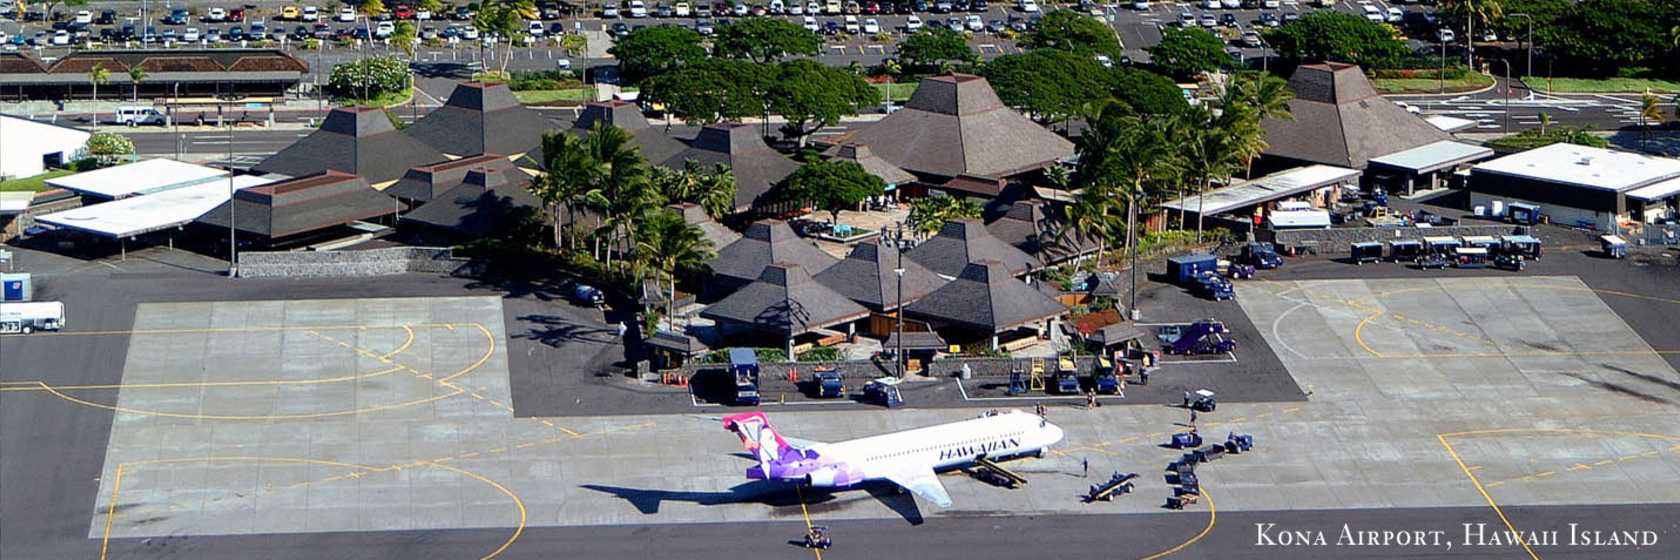 Kona Airport